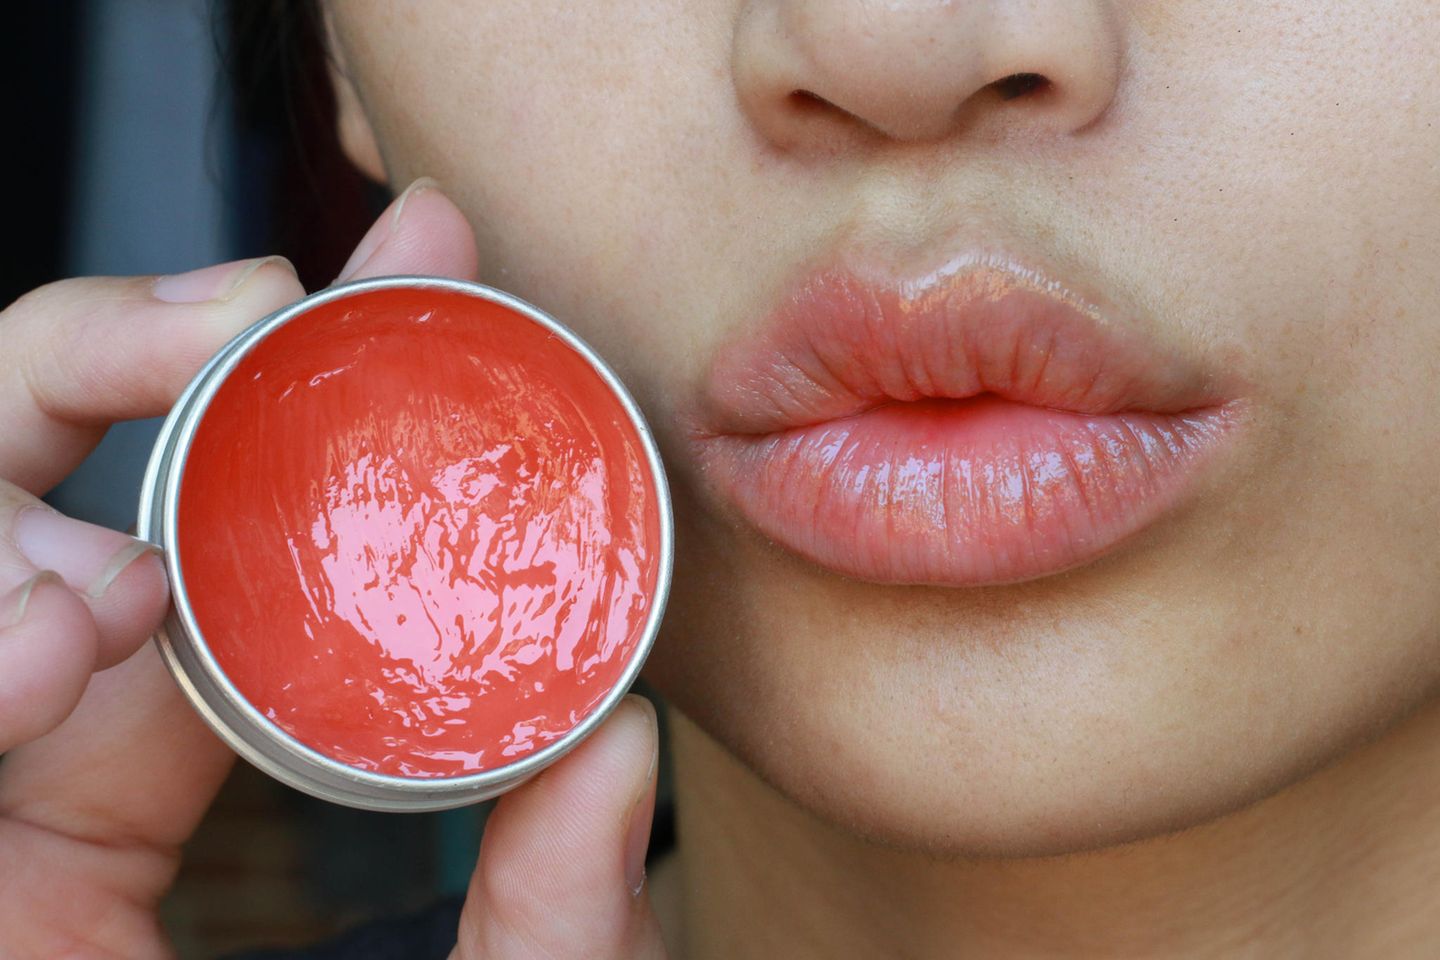 Woman uses lip balm, lip balm